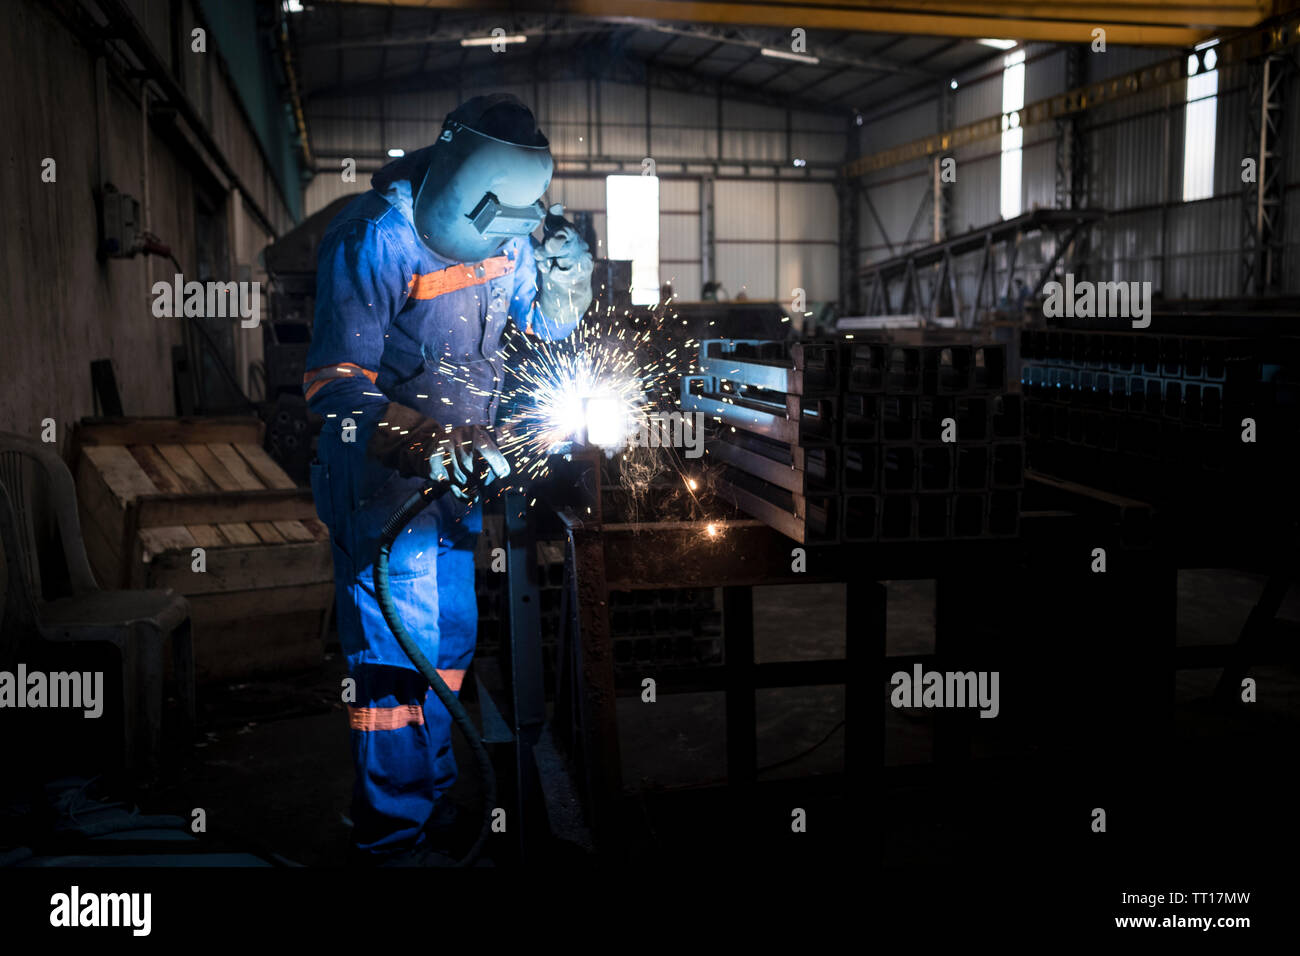 Welder master welding steel or iron, metal industry concept photo Stock Photo